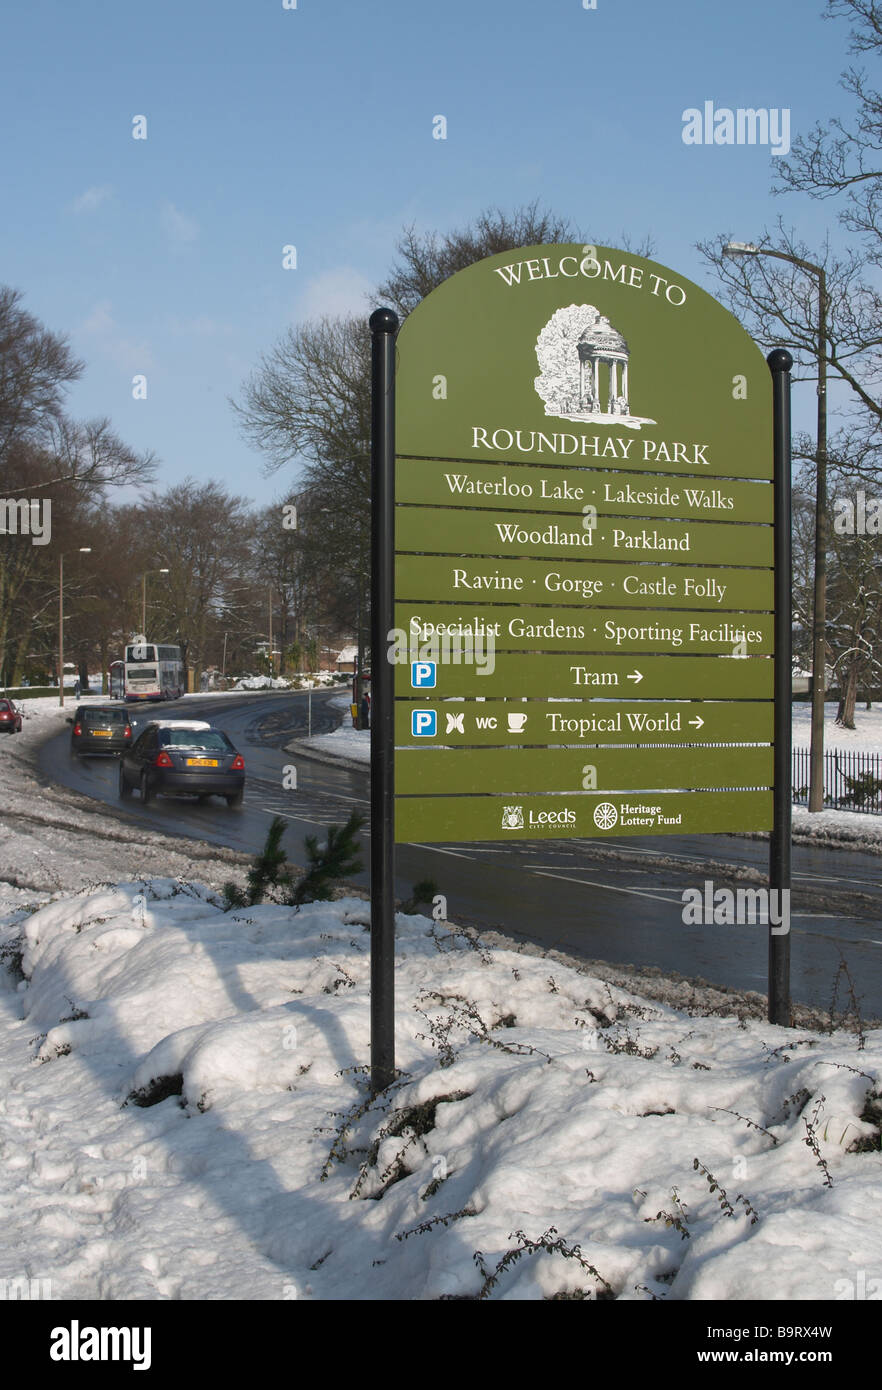 Schnee-Szene mit Bäumen und Sträuchern und Absicherung Straße durchzogen mit willkommen zu Roundhay Park Zeichen Stockfoto